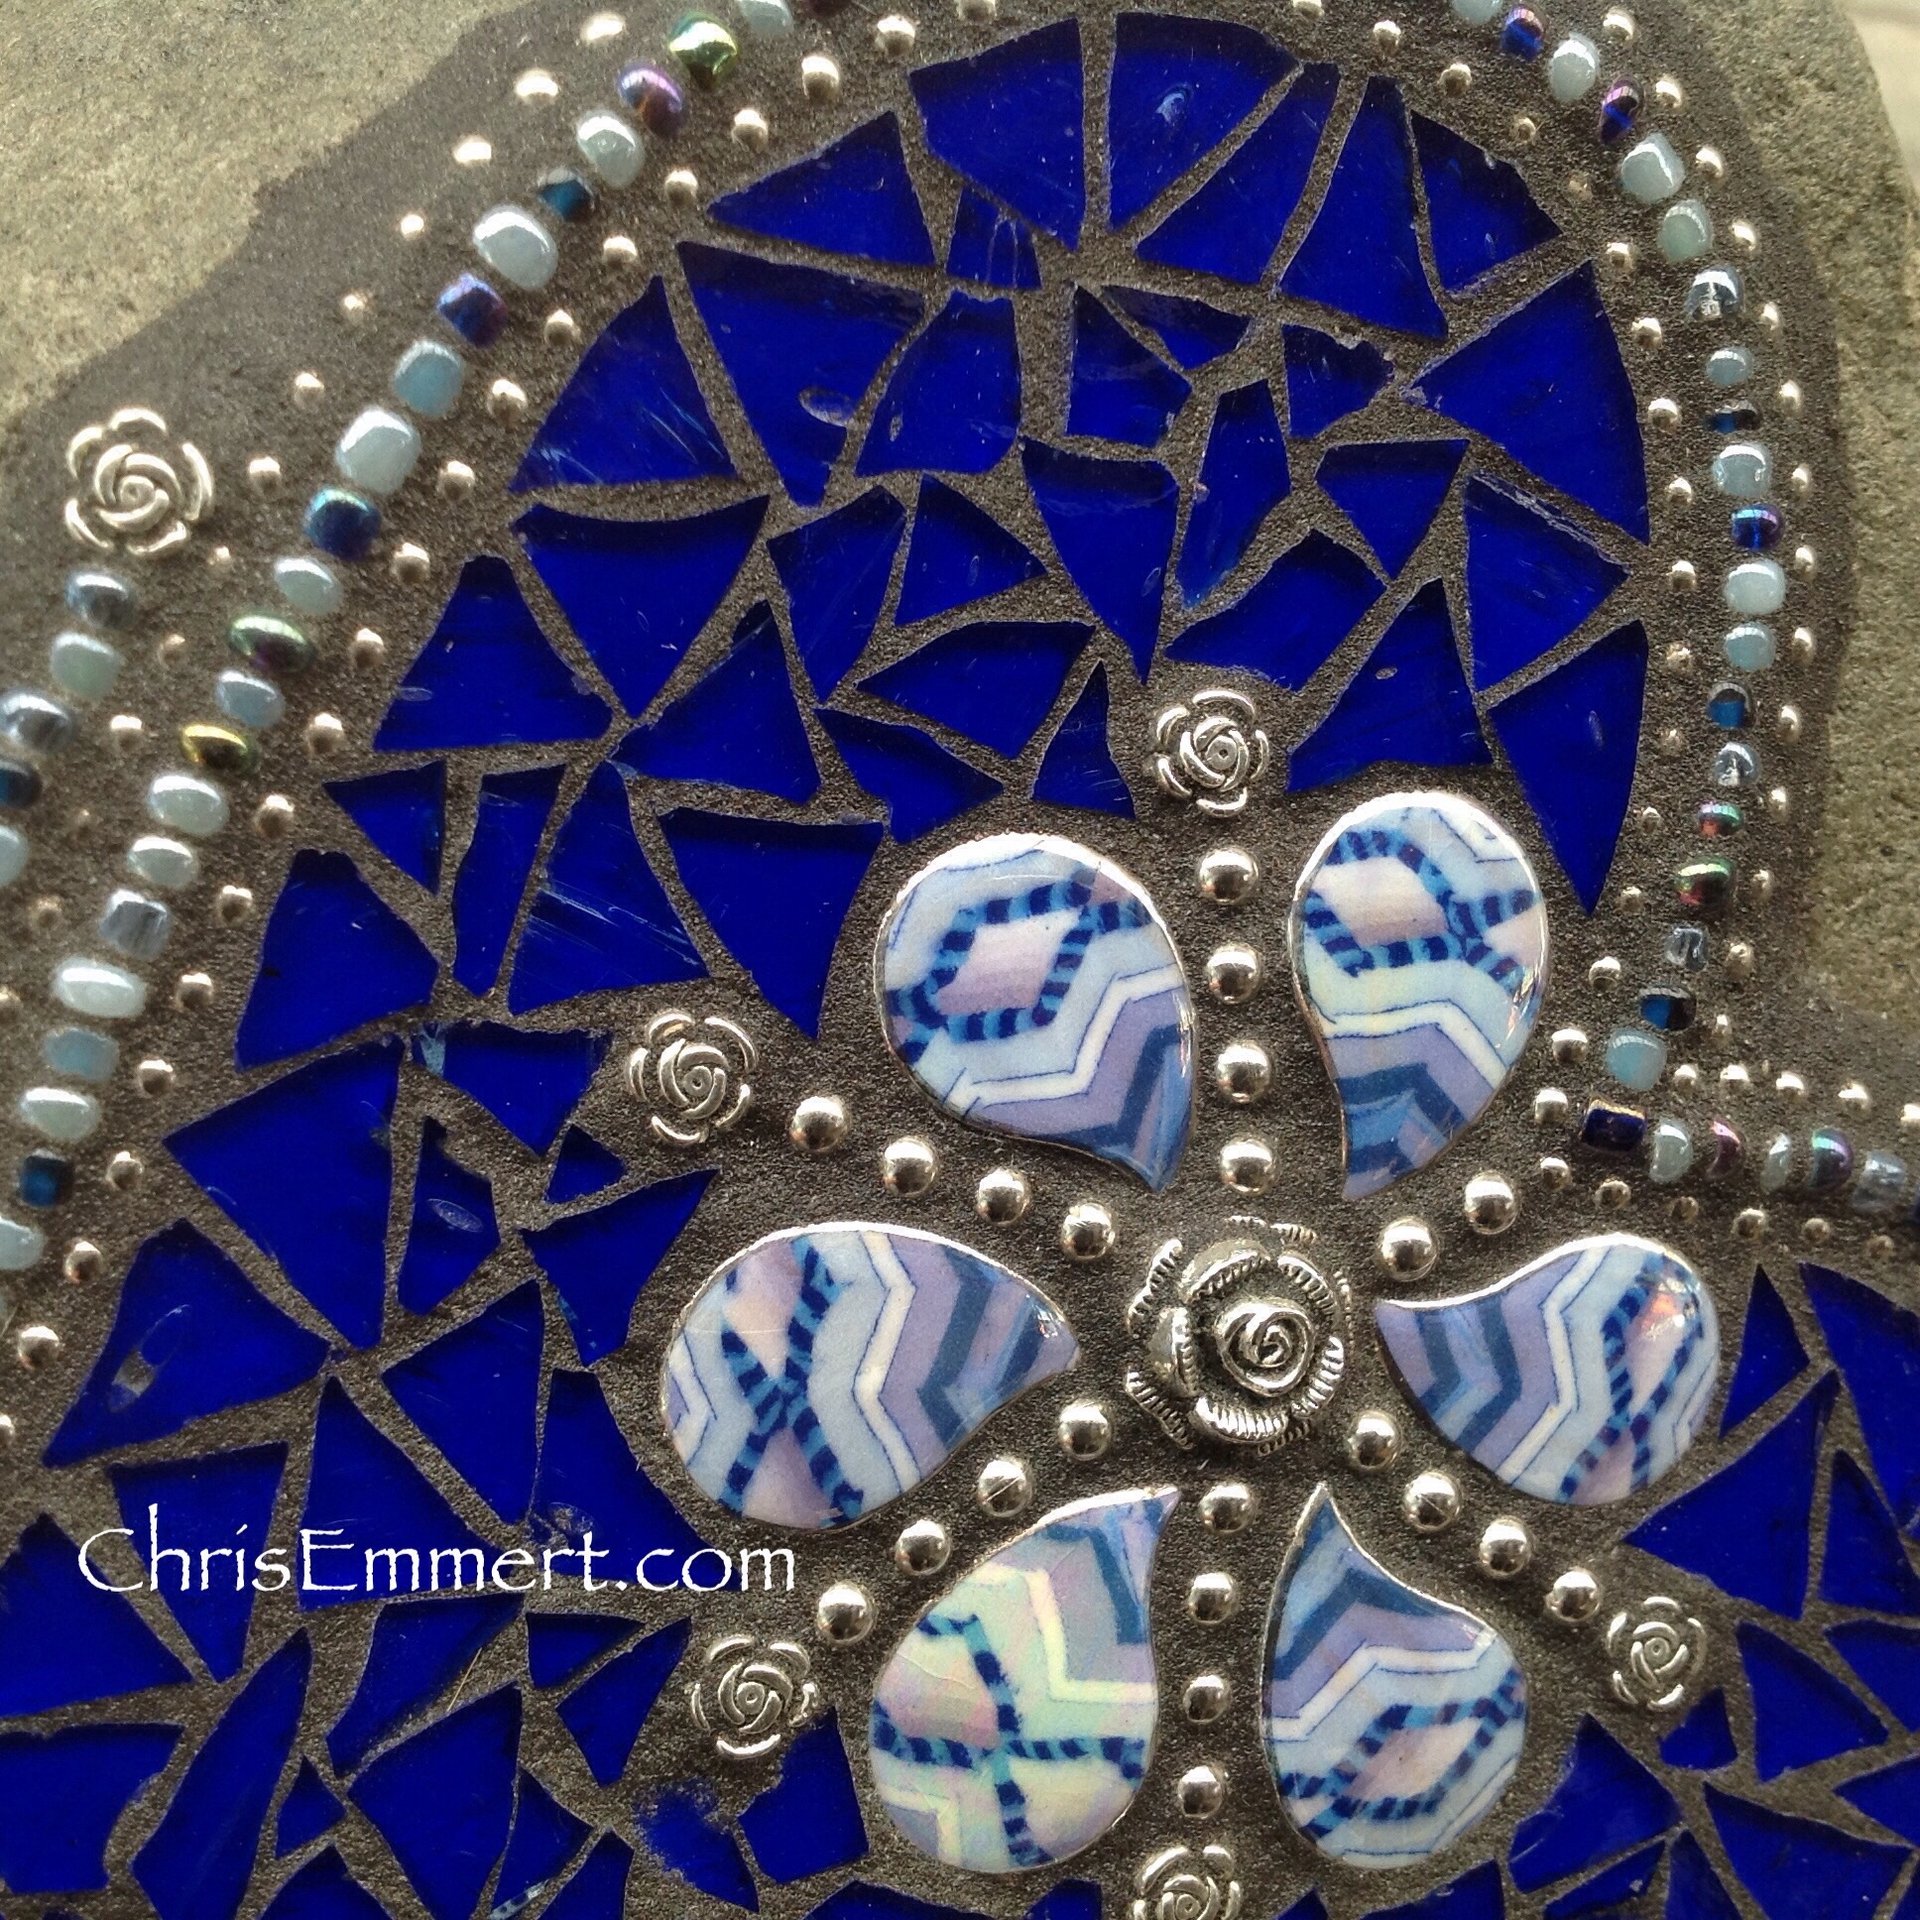 Cobalt Blue Mosaic Heart, Mosaic Rock, Mosaic Garden Stone, Home Decor, Garden Gift, Gardener